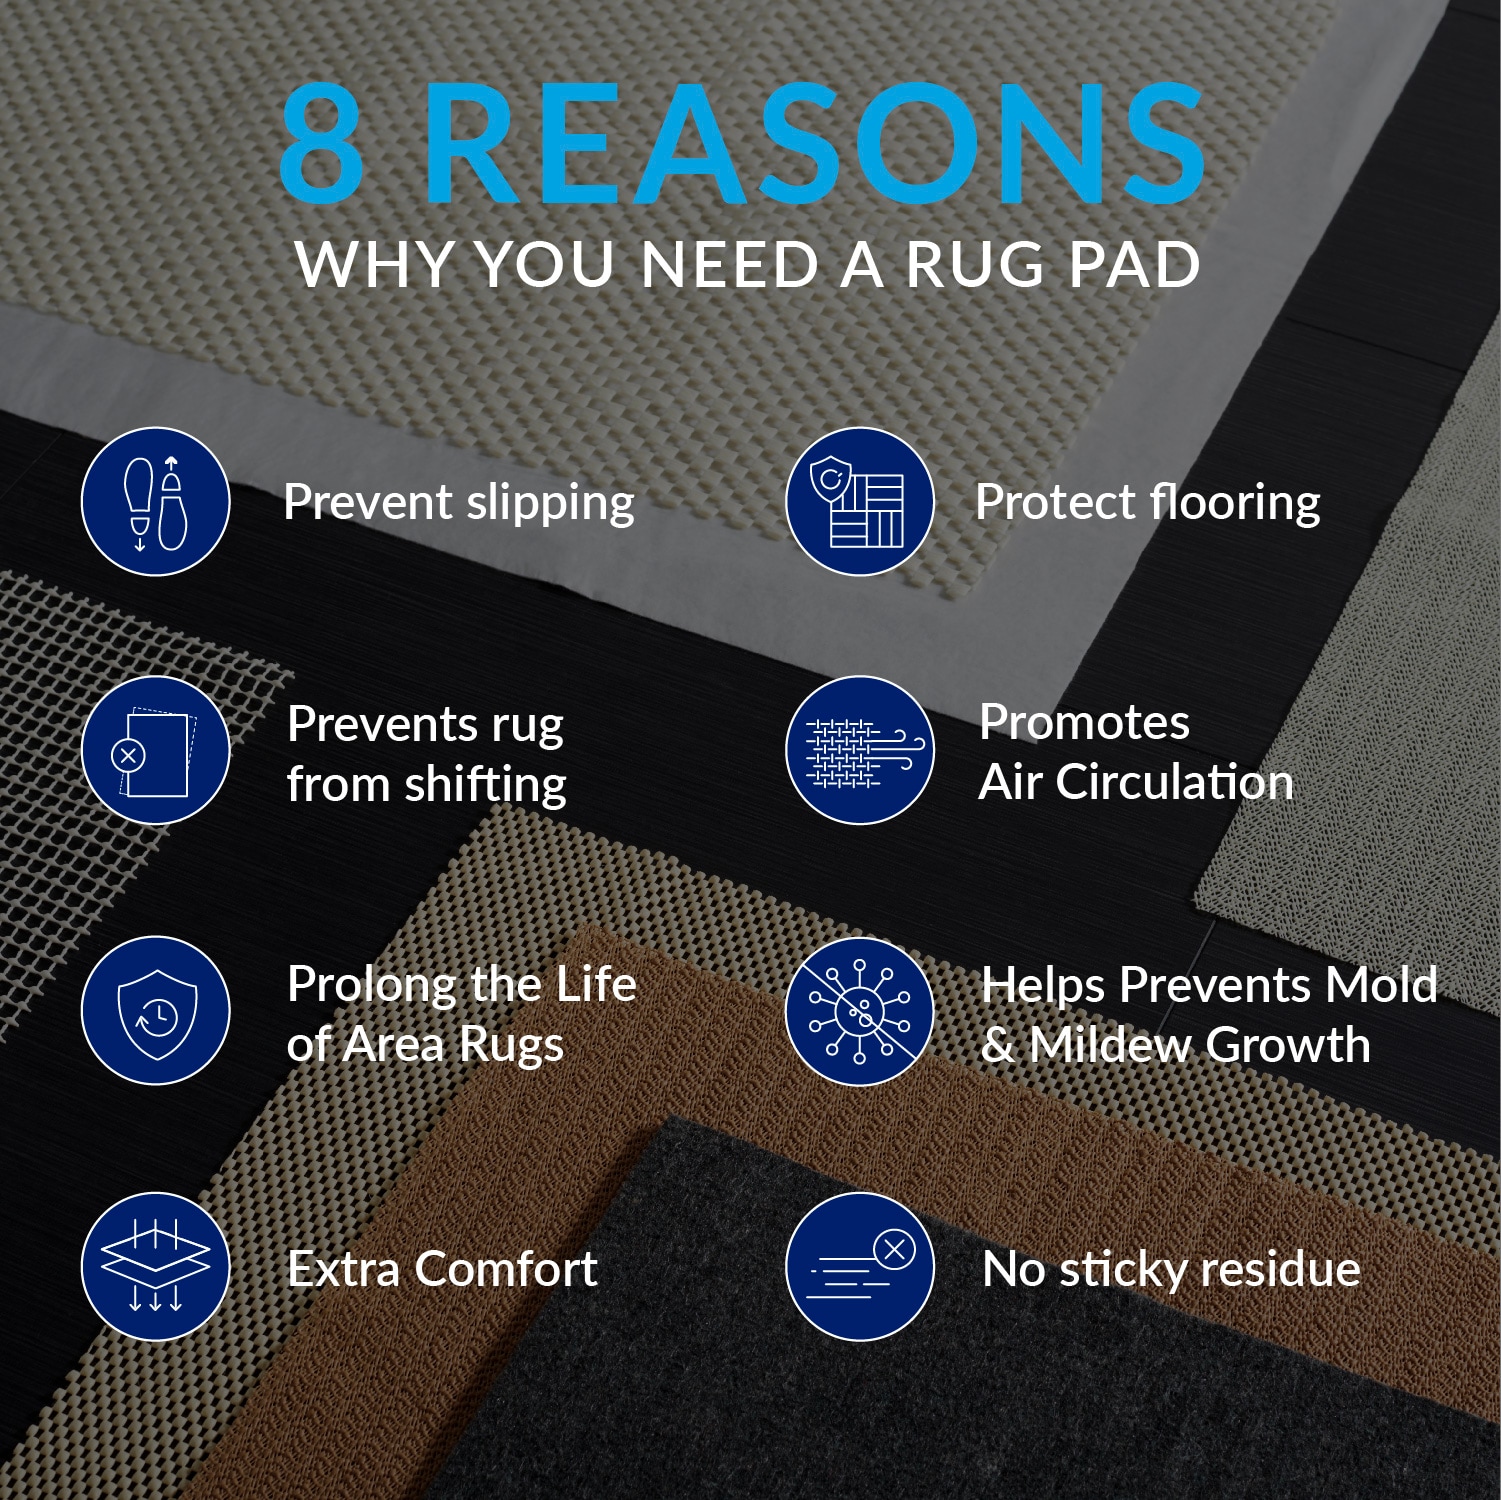 Do I Need a Rug Pad?